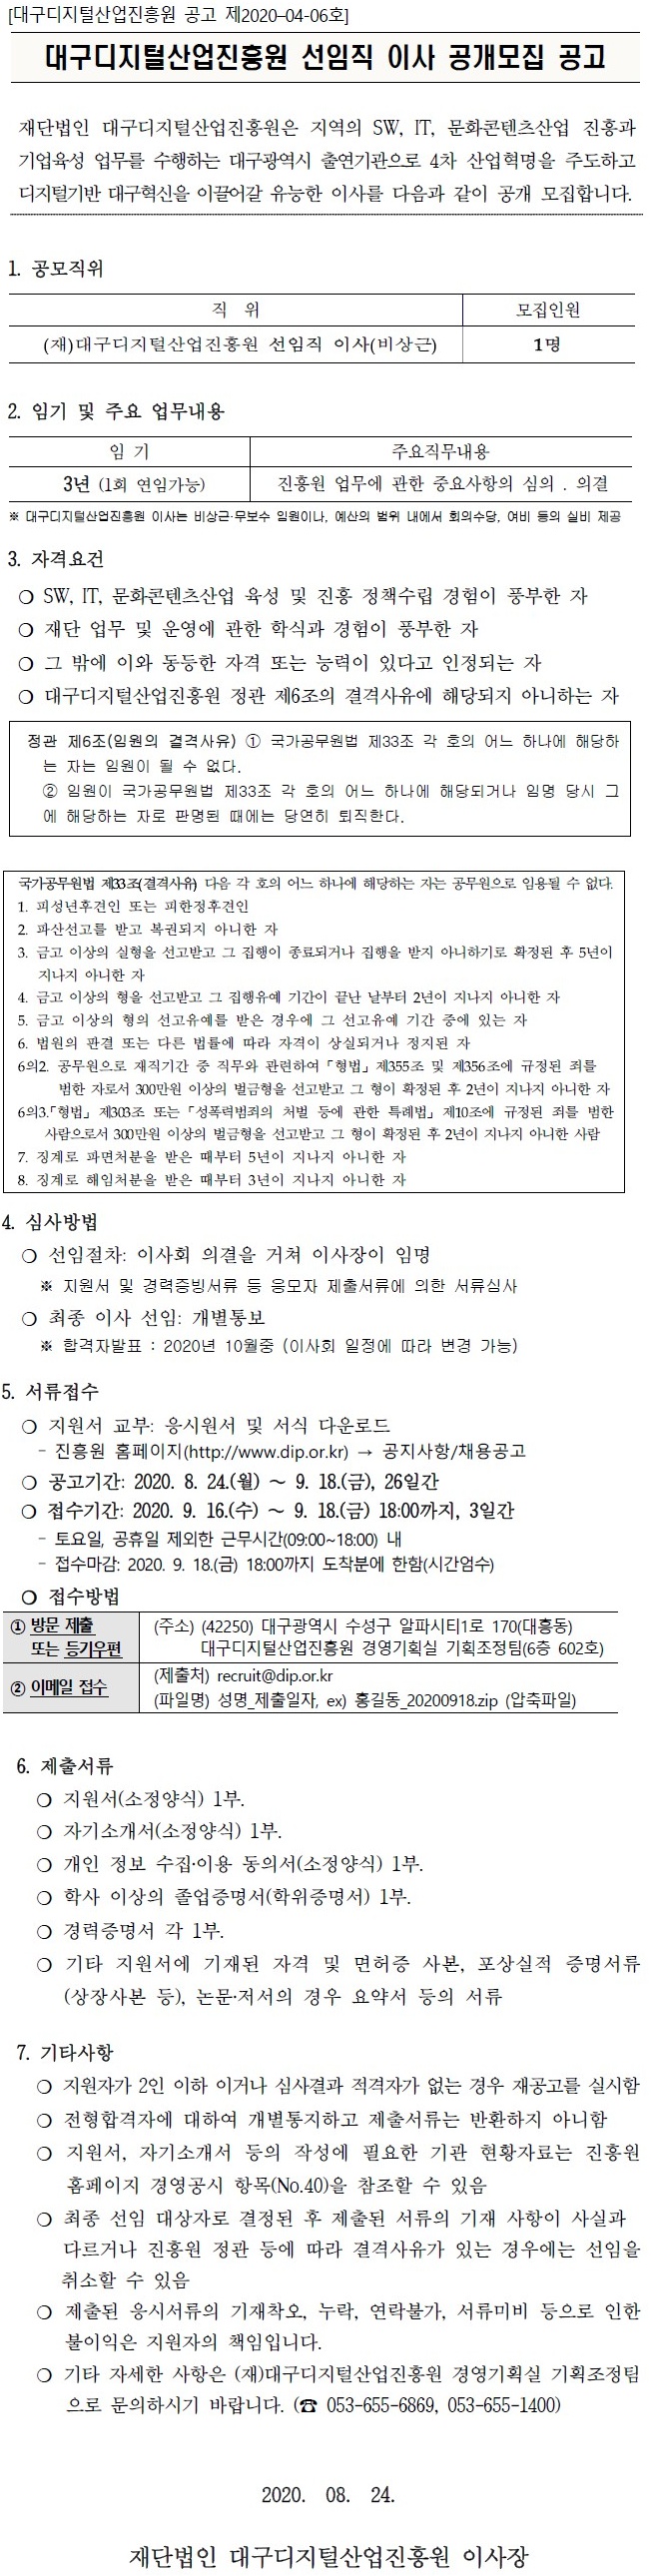 (재)대구디지털산업진흥원 선임직 이사 공개모집 공고